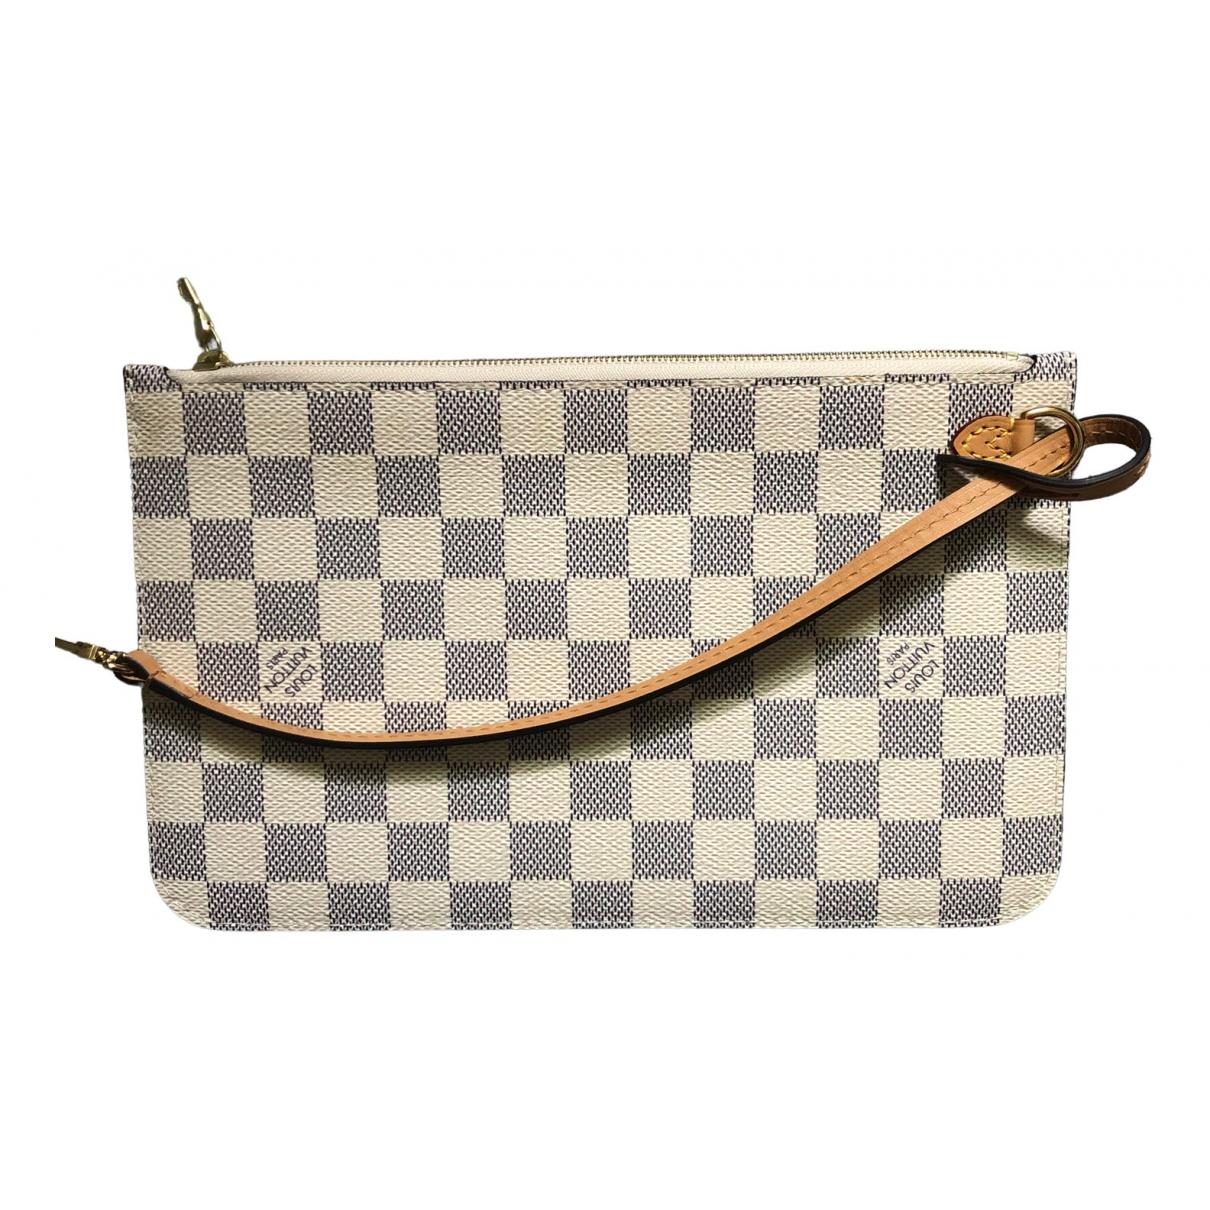 Neverfull cloth handbag Louis Vuitton Beige in Cloth - 31963883